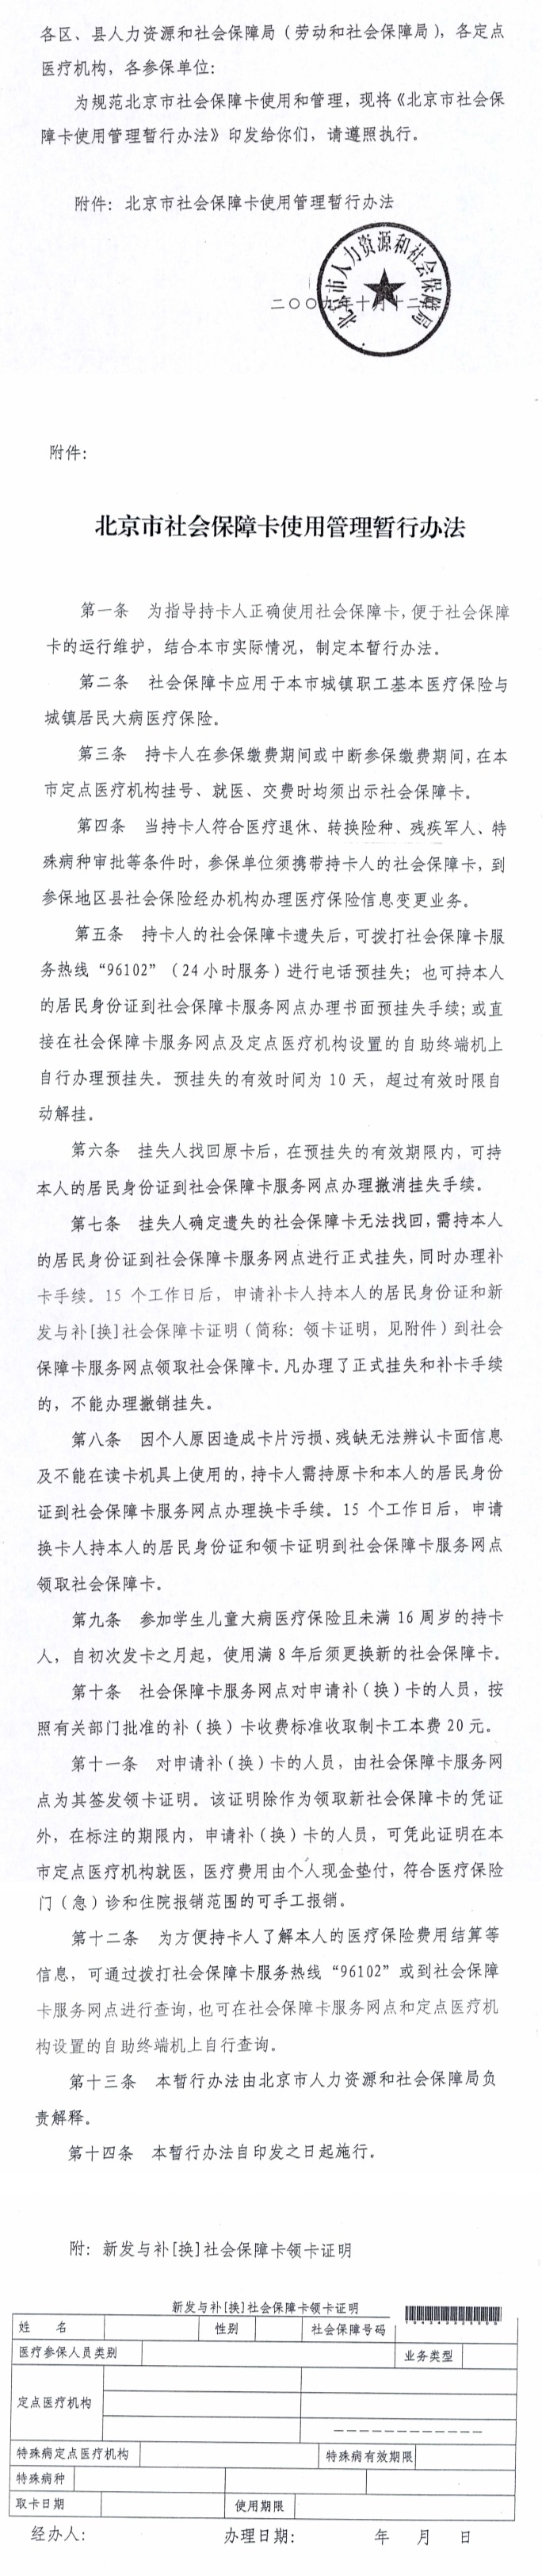 关于印发北京市社会保障卡使用管理暂行办法的通知.jpg